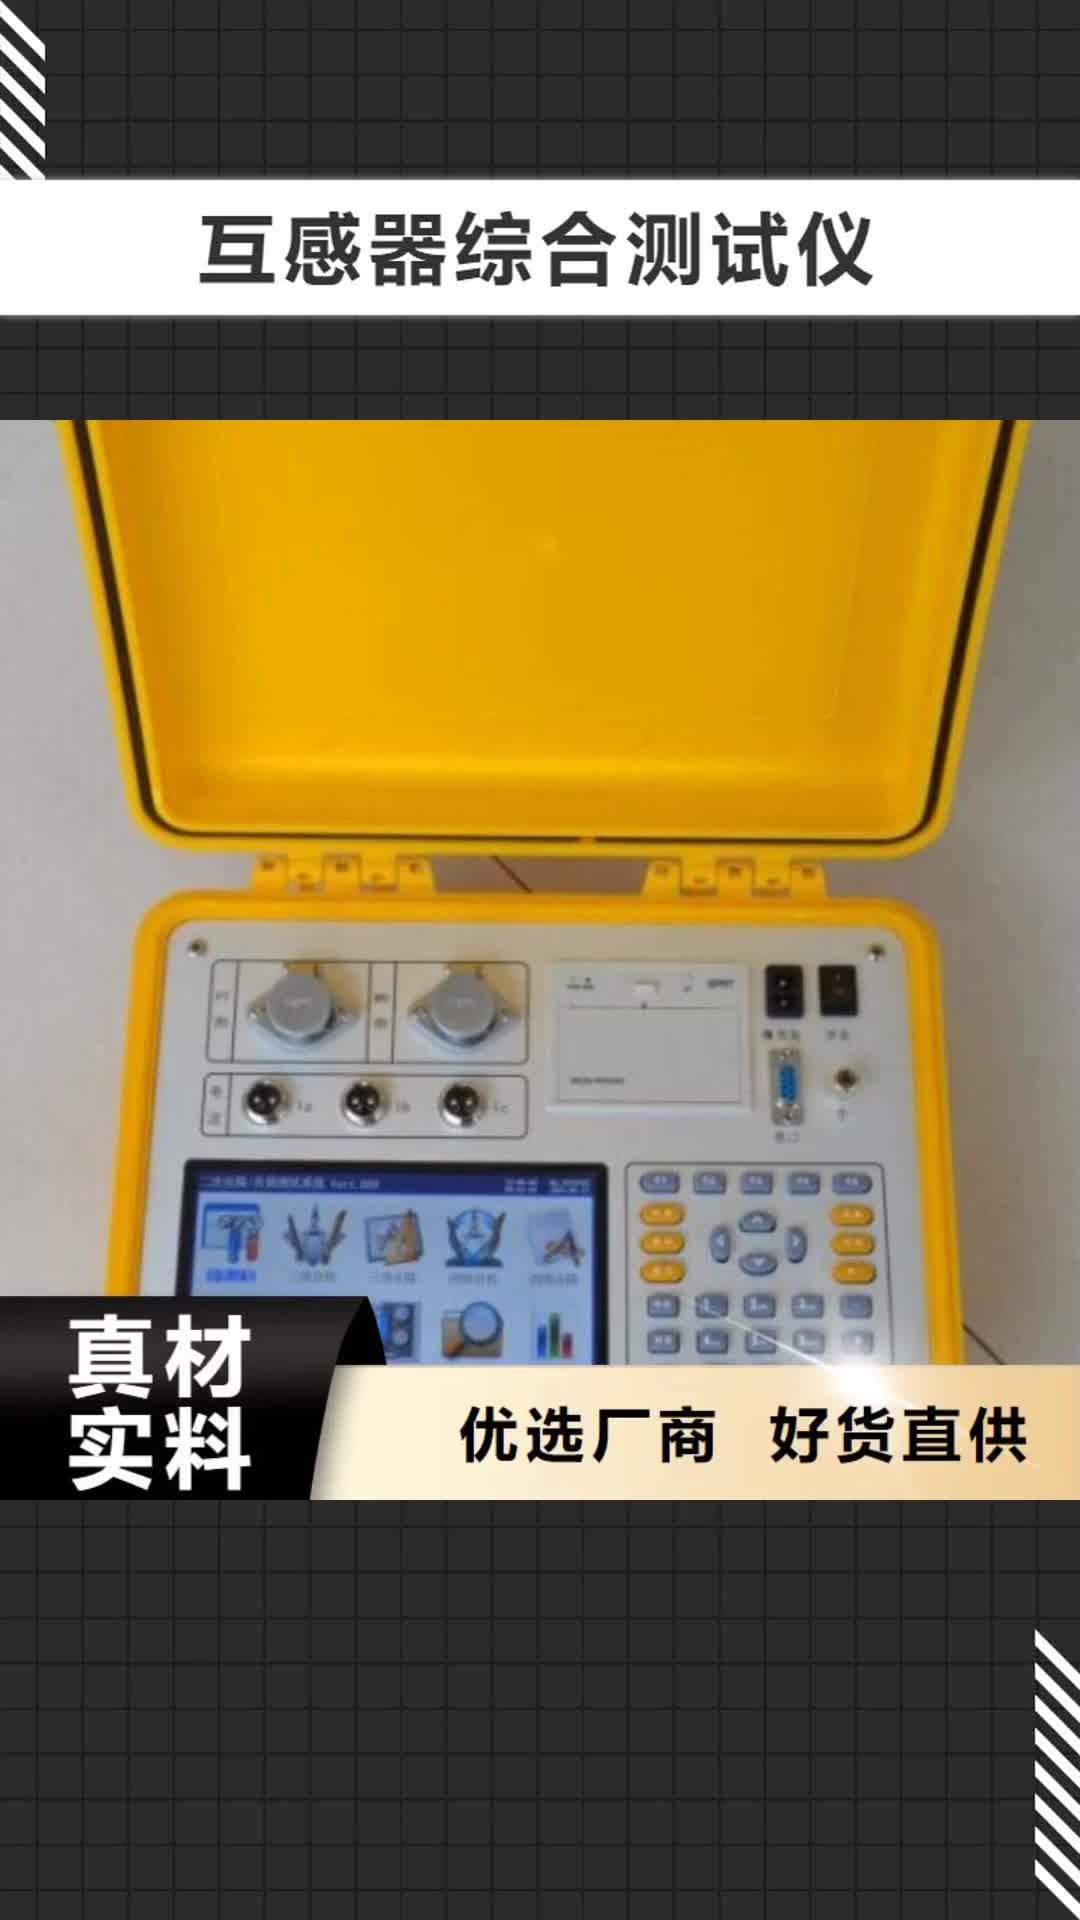 上海【互感器综合测试仪】高压开关特性校准装置真正让利给买家